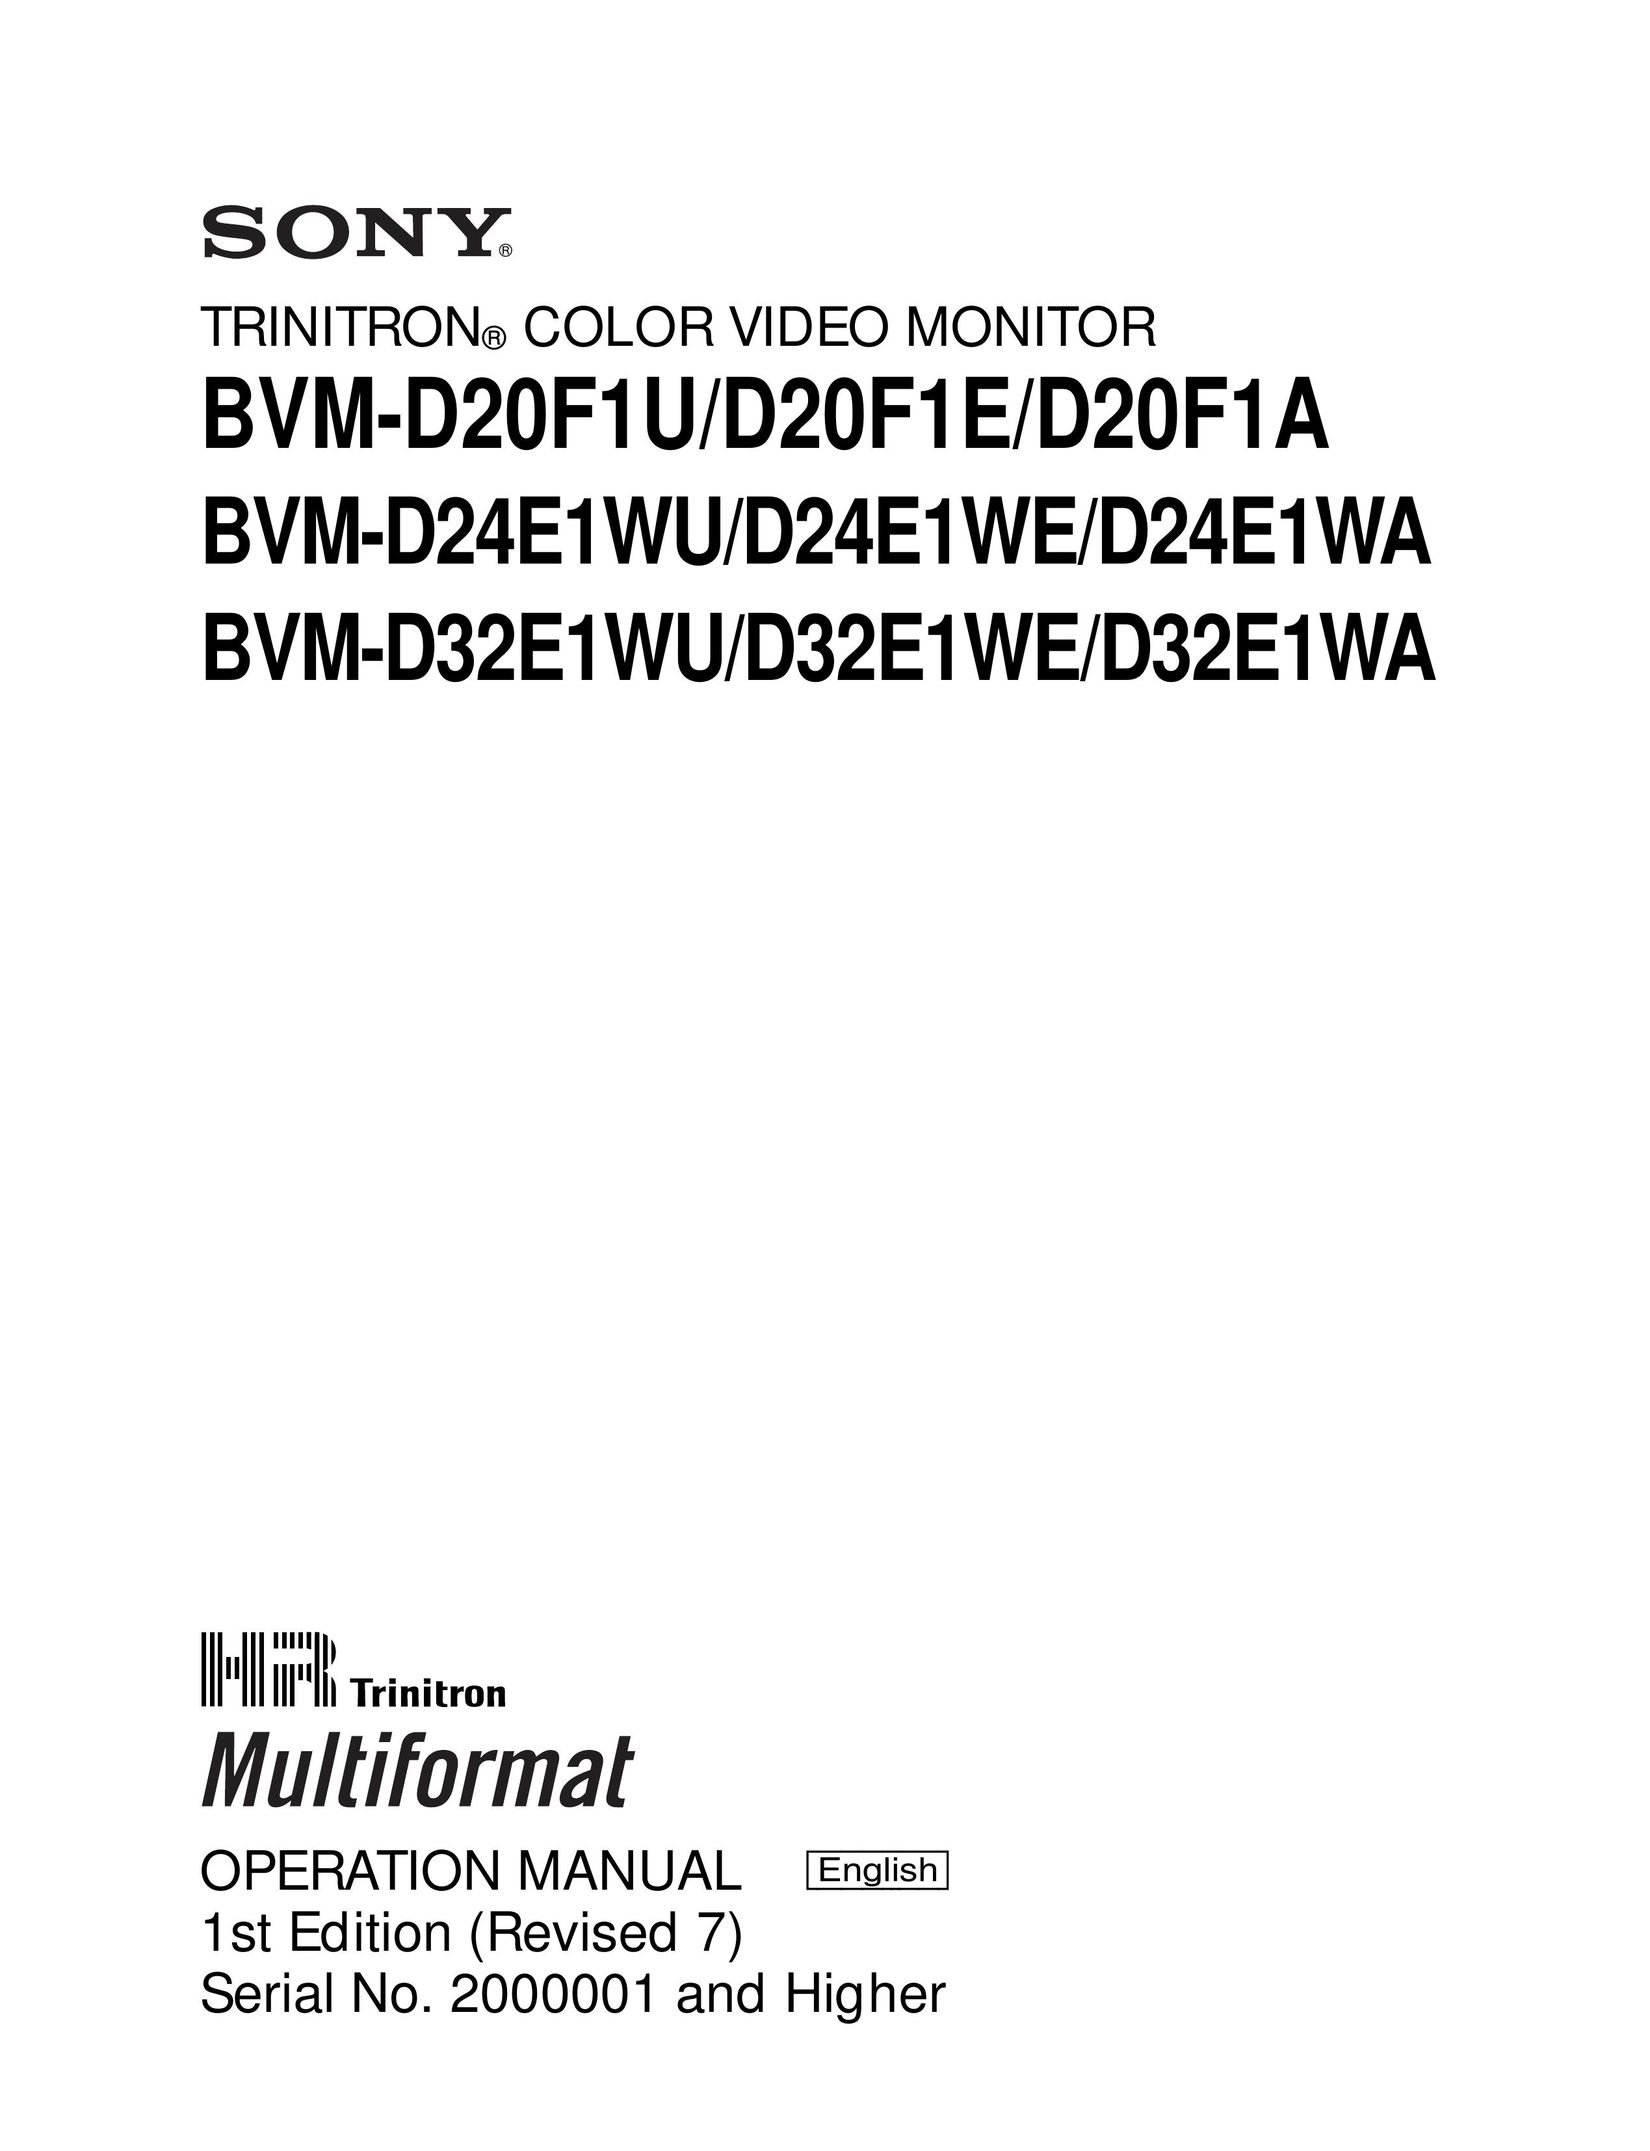 Sony BVM-D24E1WU, BVM-D24E1WE, BVM-D24E1WA Computer Monitor User Manual